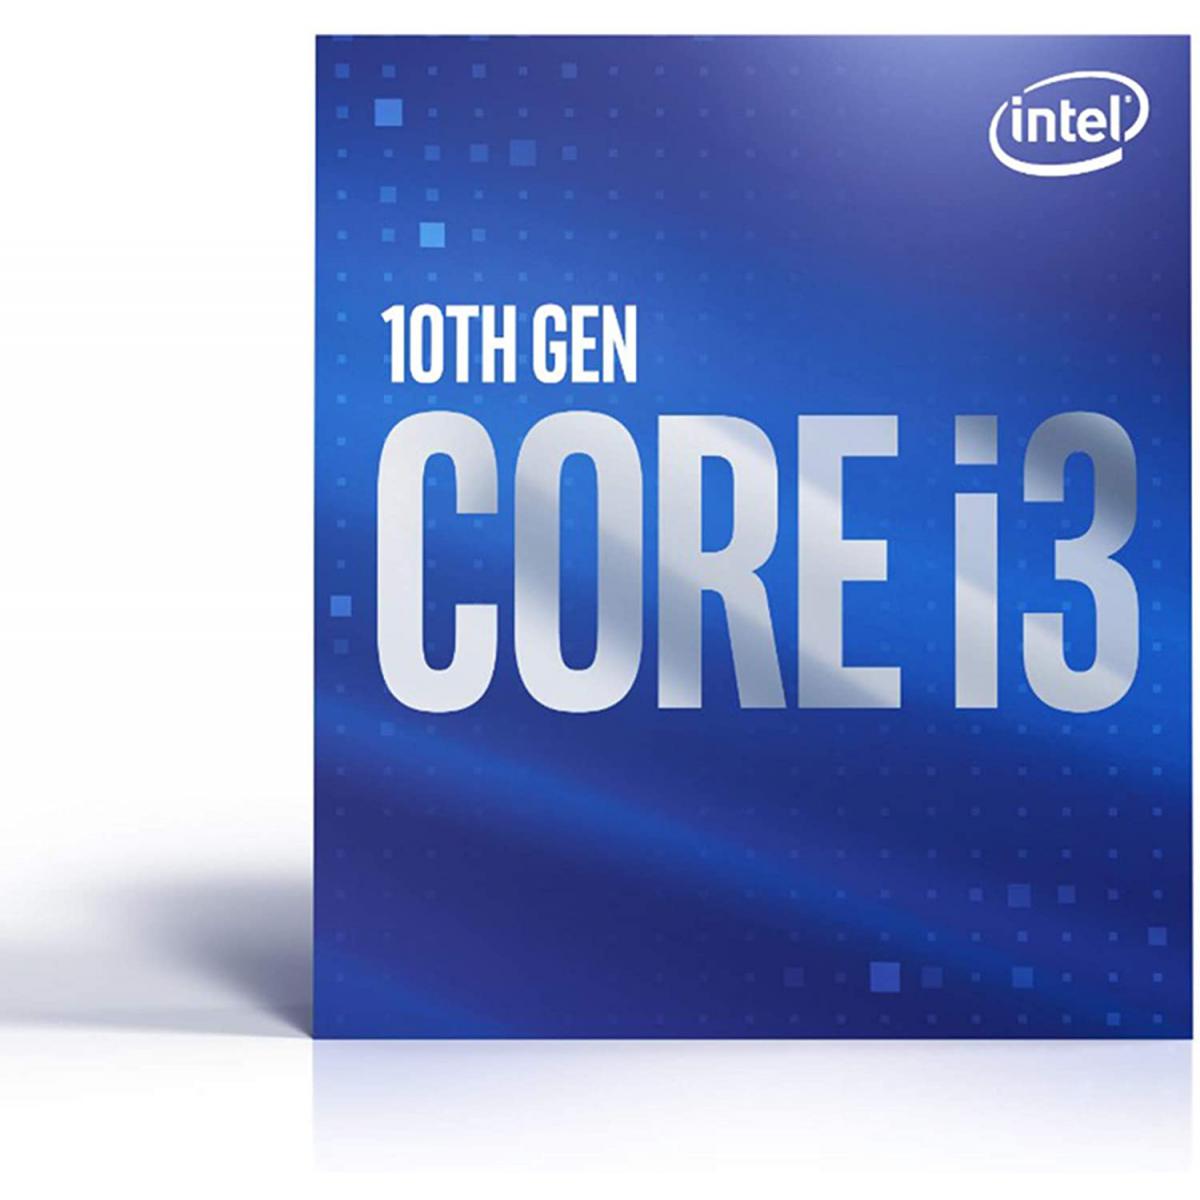 Intel - INTEL Core i3-10100F 3.6GHz LGA1200 Box Core i3-10100F 3.6GHz LGA1200 6M Cache No Graphics Boxed CPU - Processeur INTEL